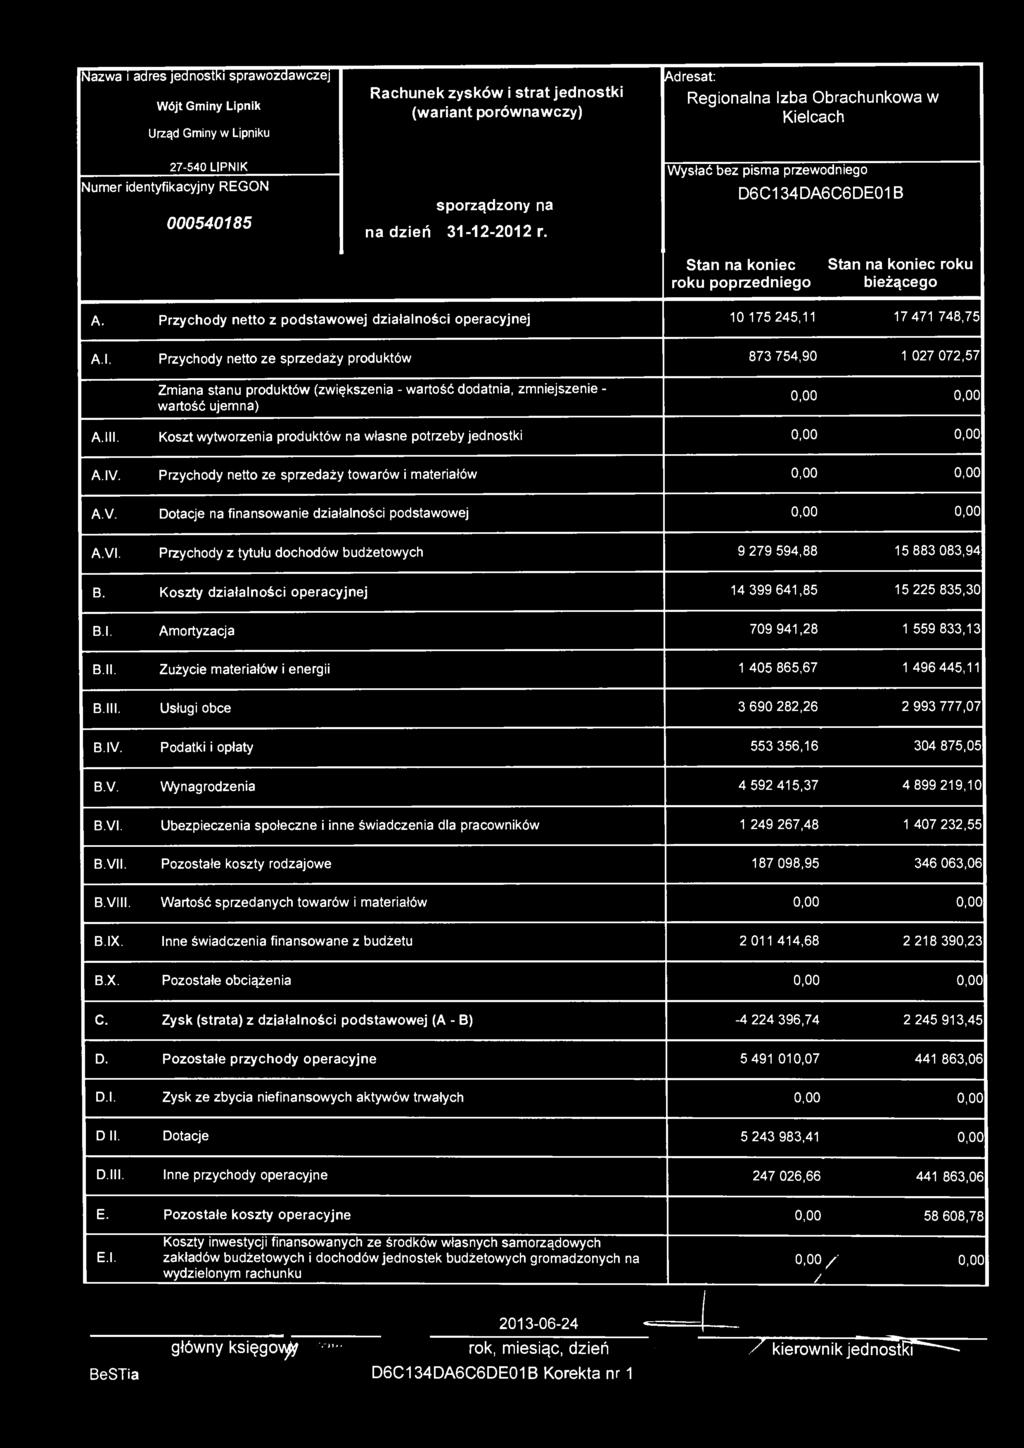 Nazwa i adres jednostki sprawozdawczej Wójt Gminy Lipnik Urząd Gminy w Lipniku Rachunek zysków i strat jednostki (wariant porównawczy) Adresat: Regionalna Izba Obrachunkowa w Kielcach 27-540 LIPNIK